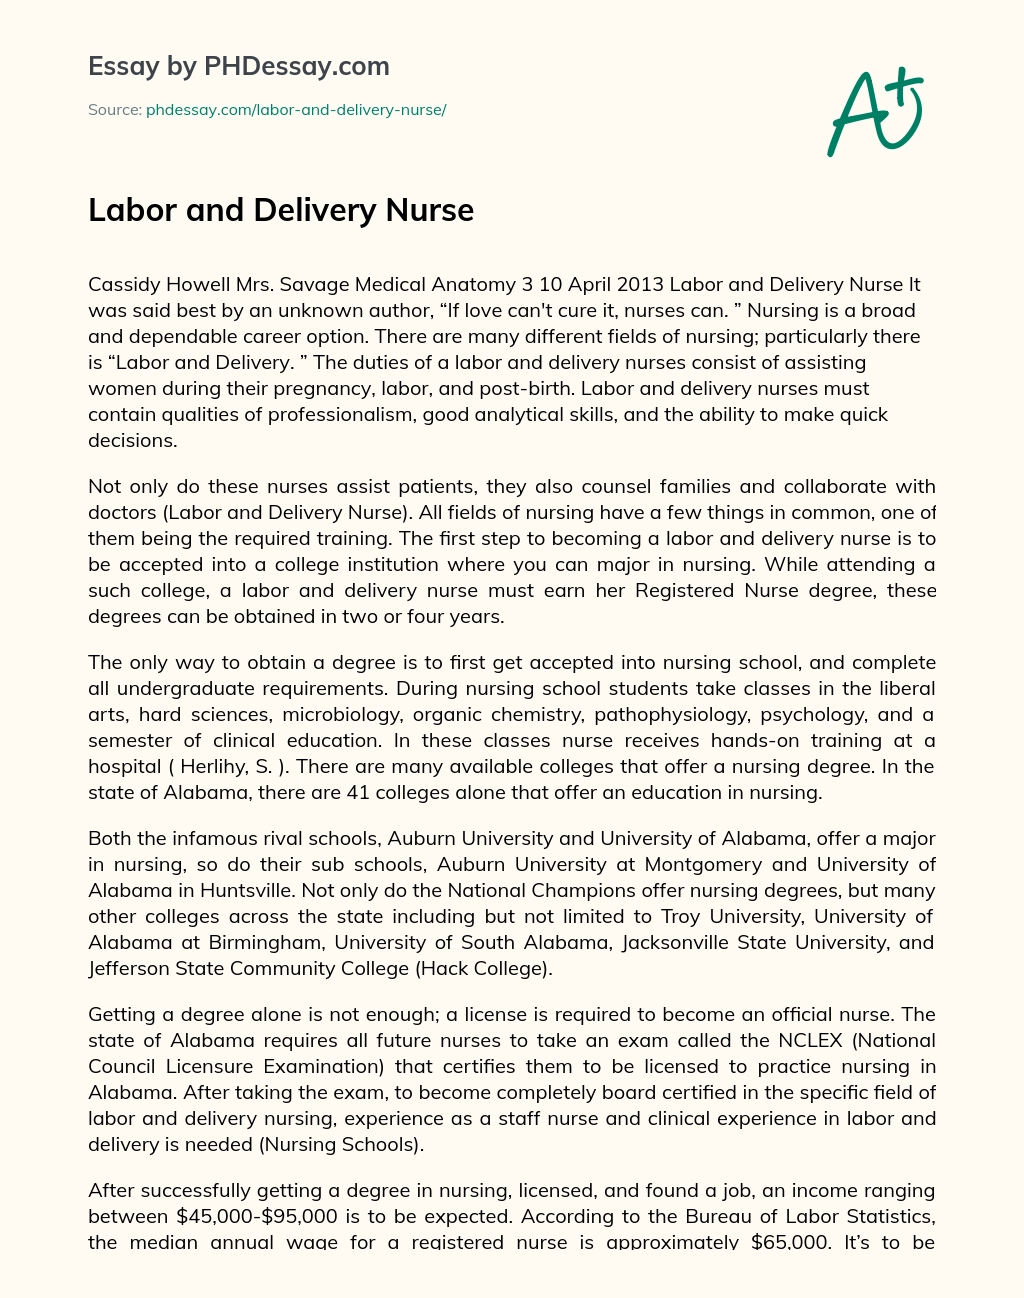 Labor And Delivery Nurse Essay Example - Phdessay.com